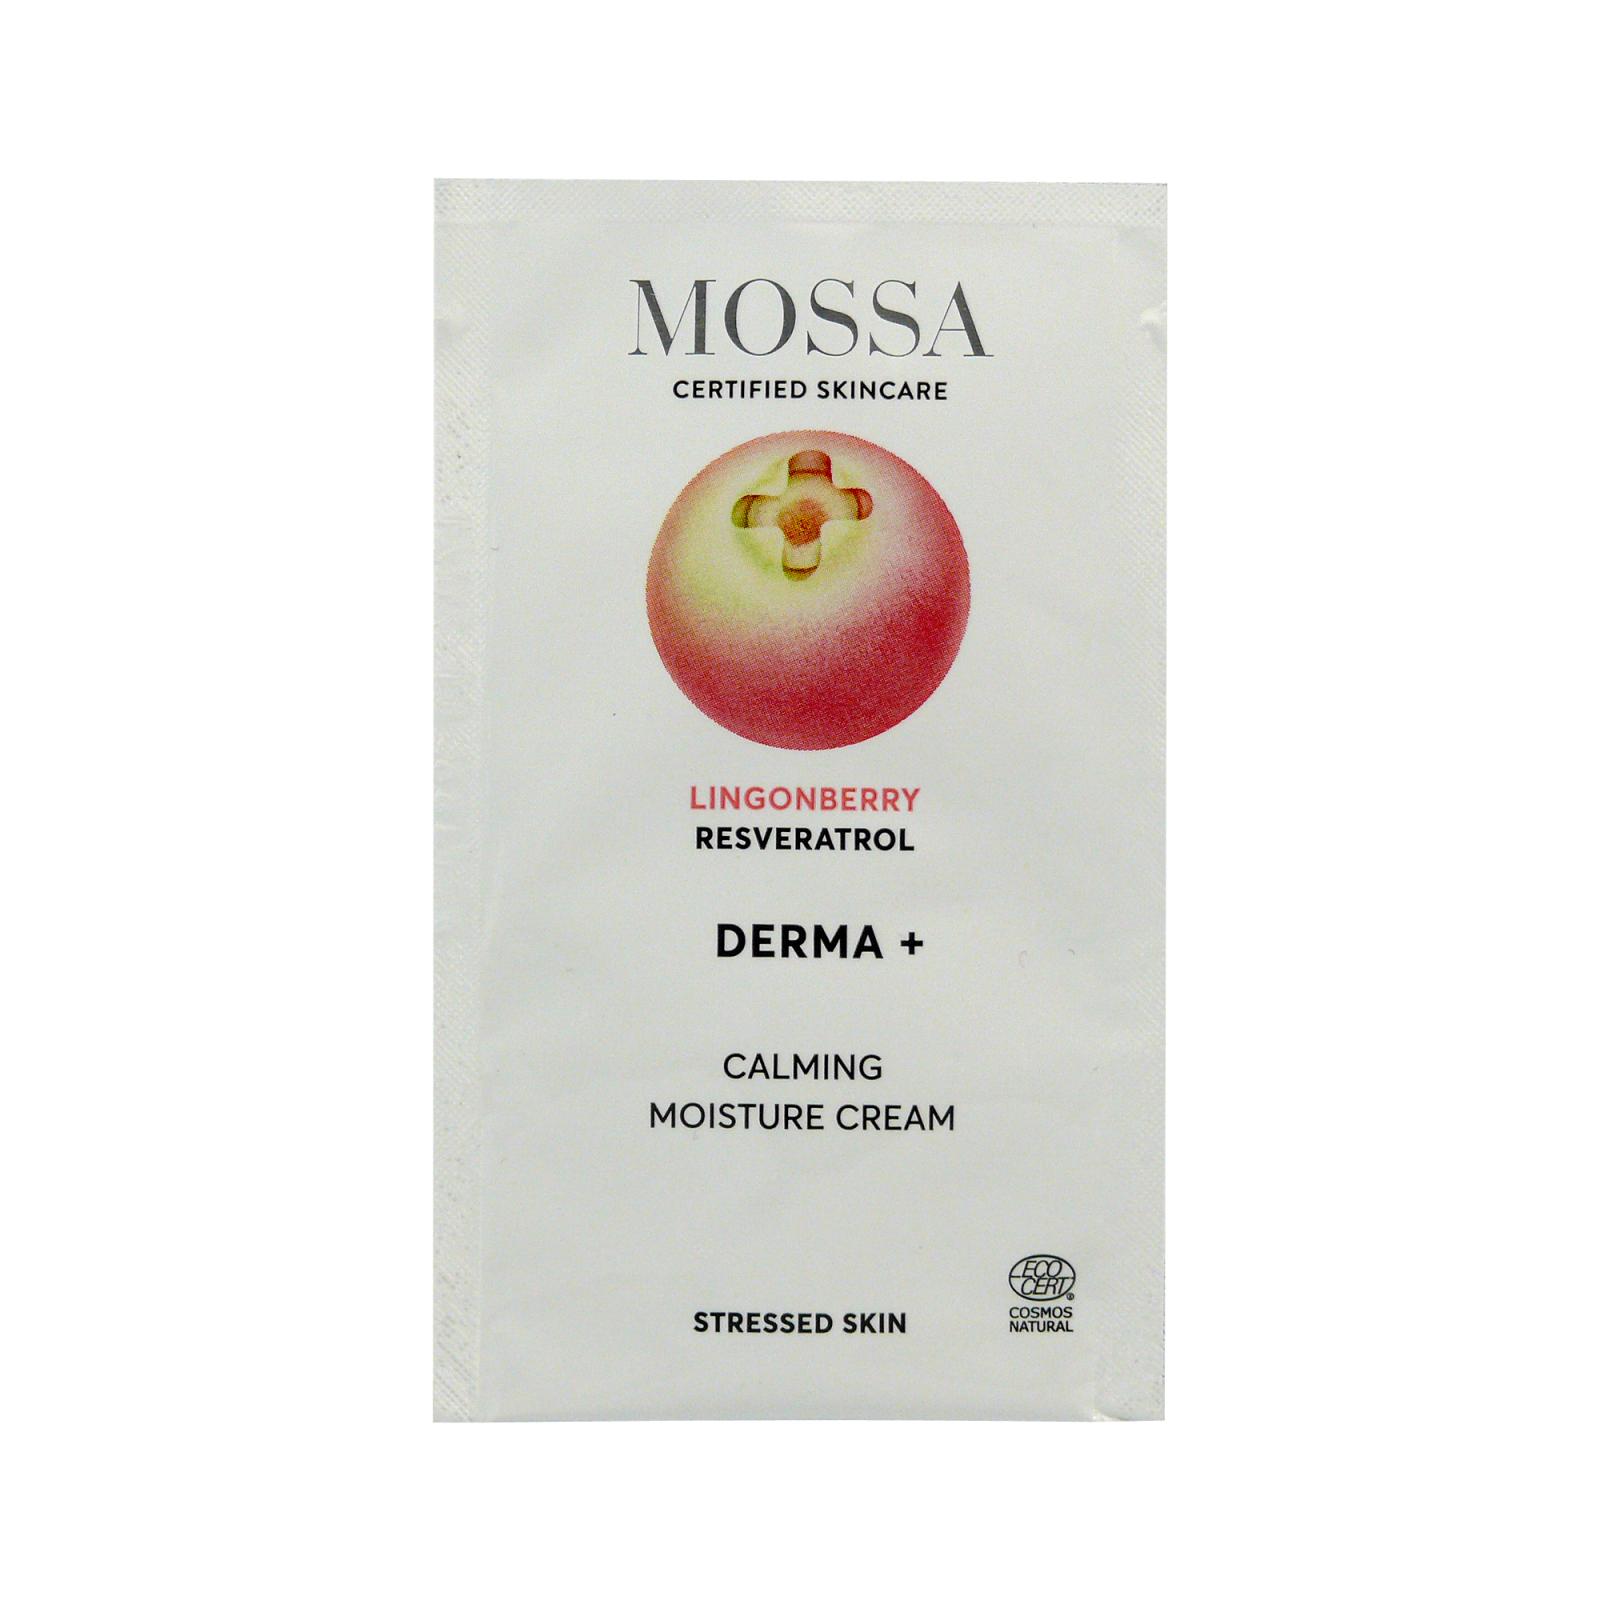 MOSSA Zklidňující hydratační krém, Derma+ 2 ml